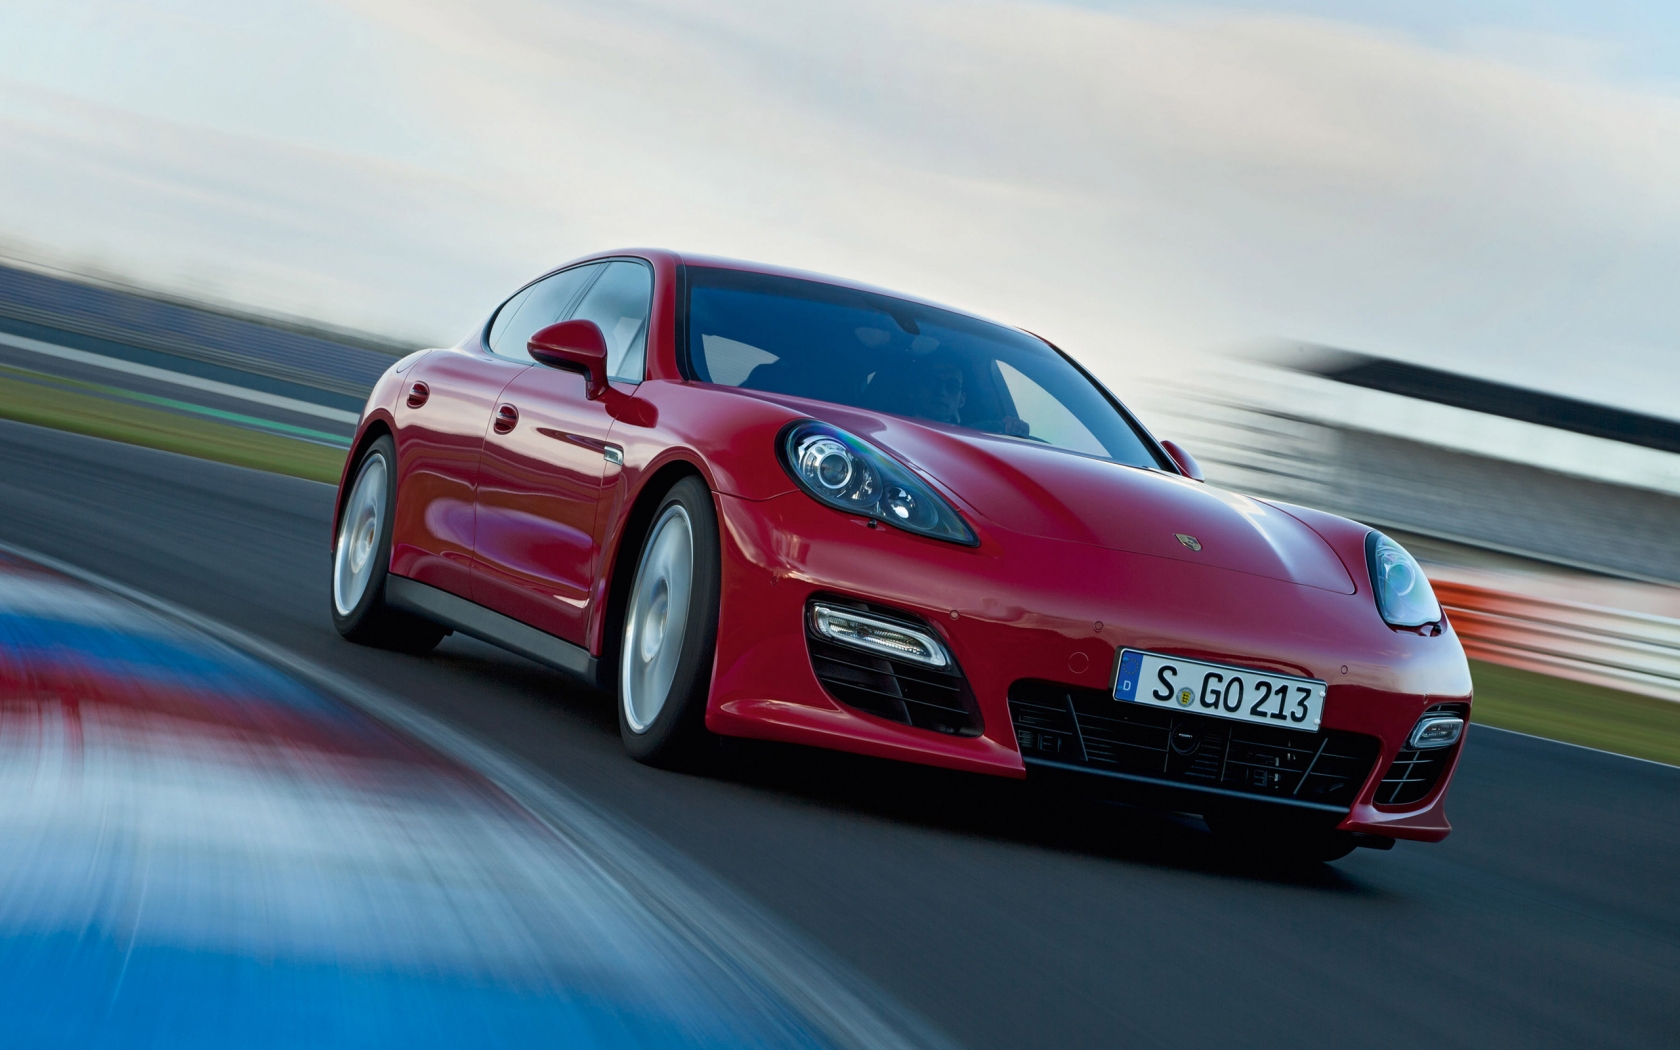 2012 Porsche Panamera GTS for 1680 x 1050 widescreen resolution